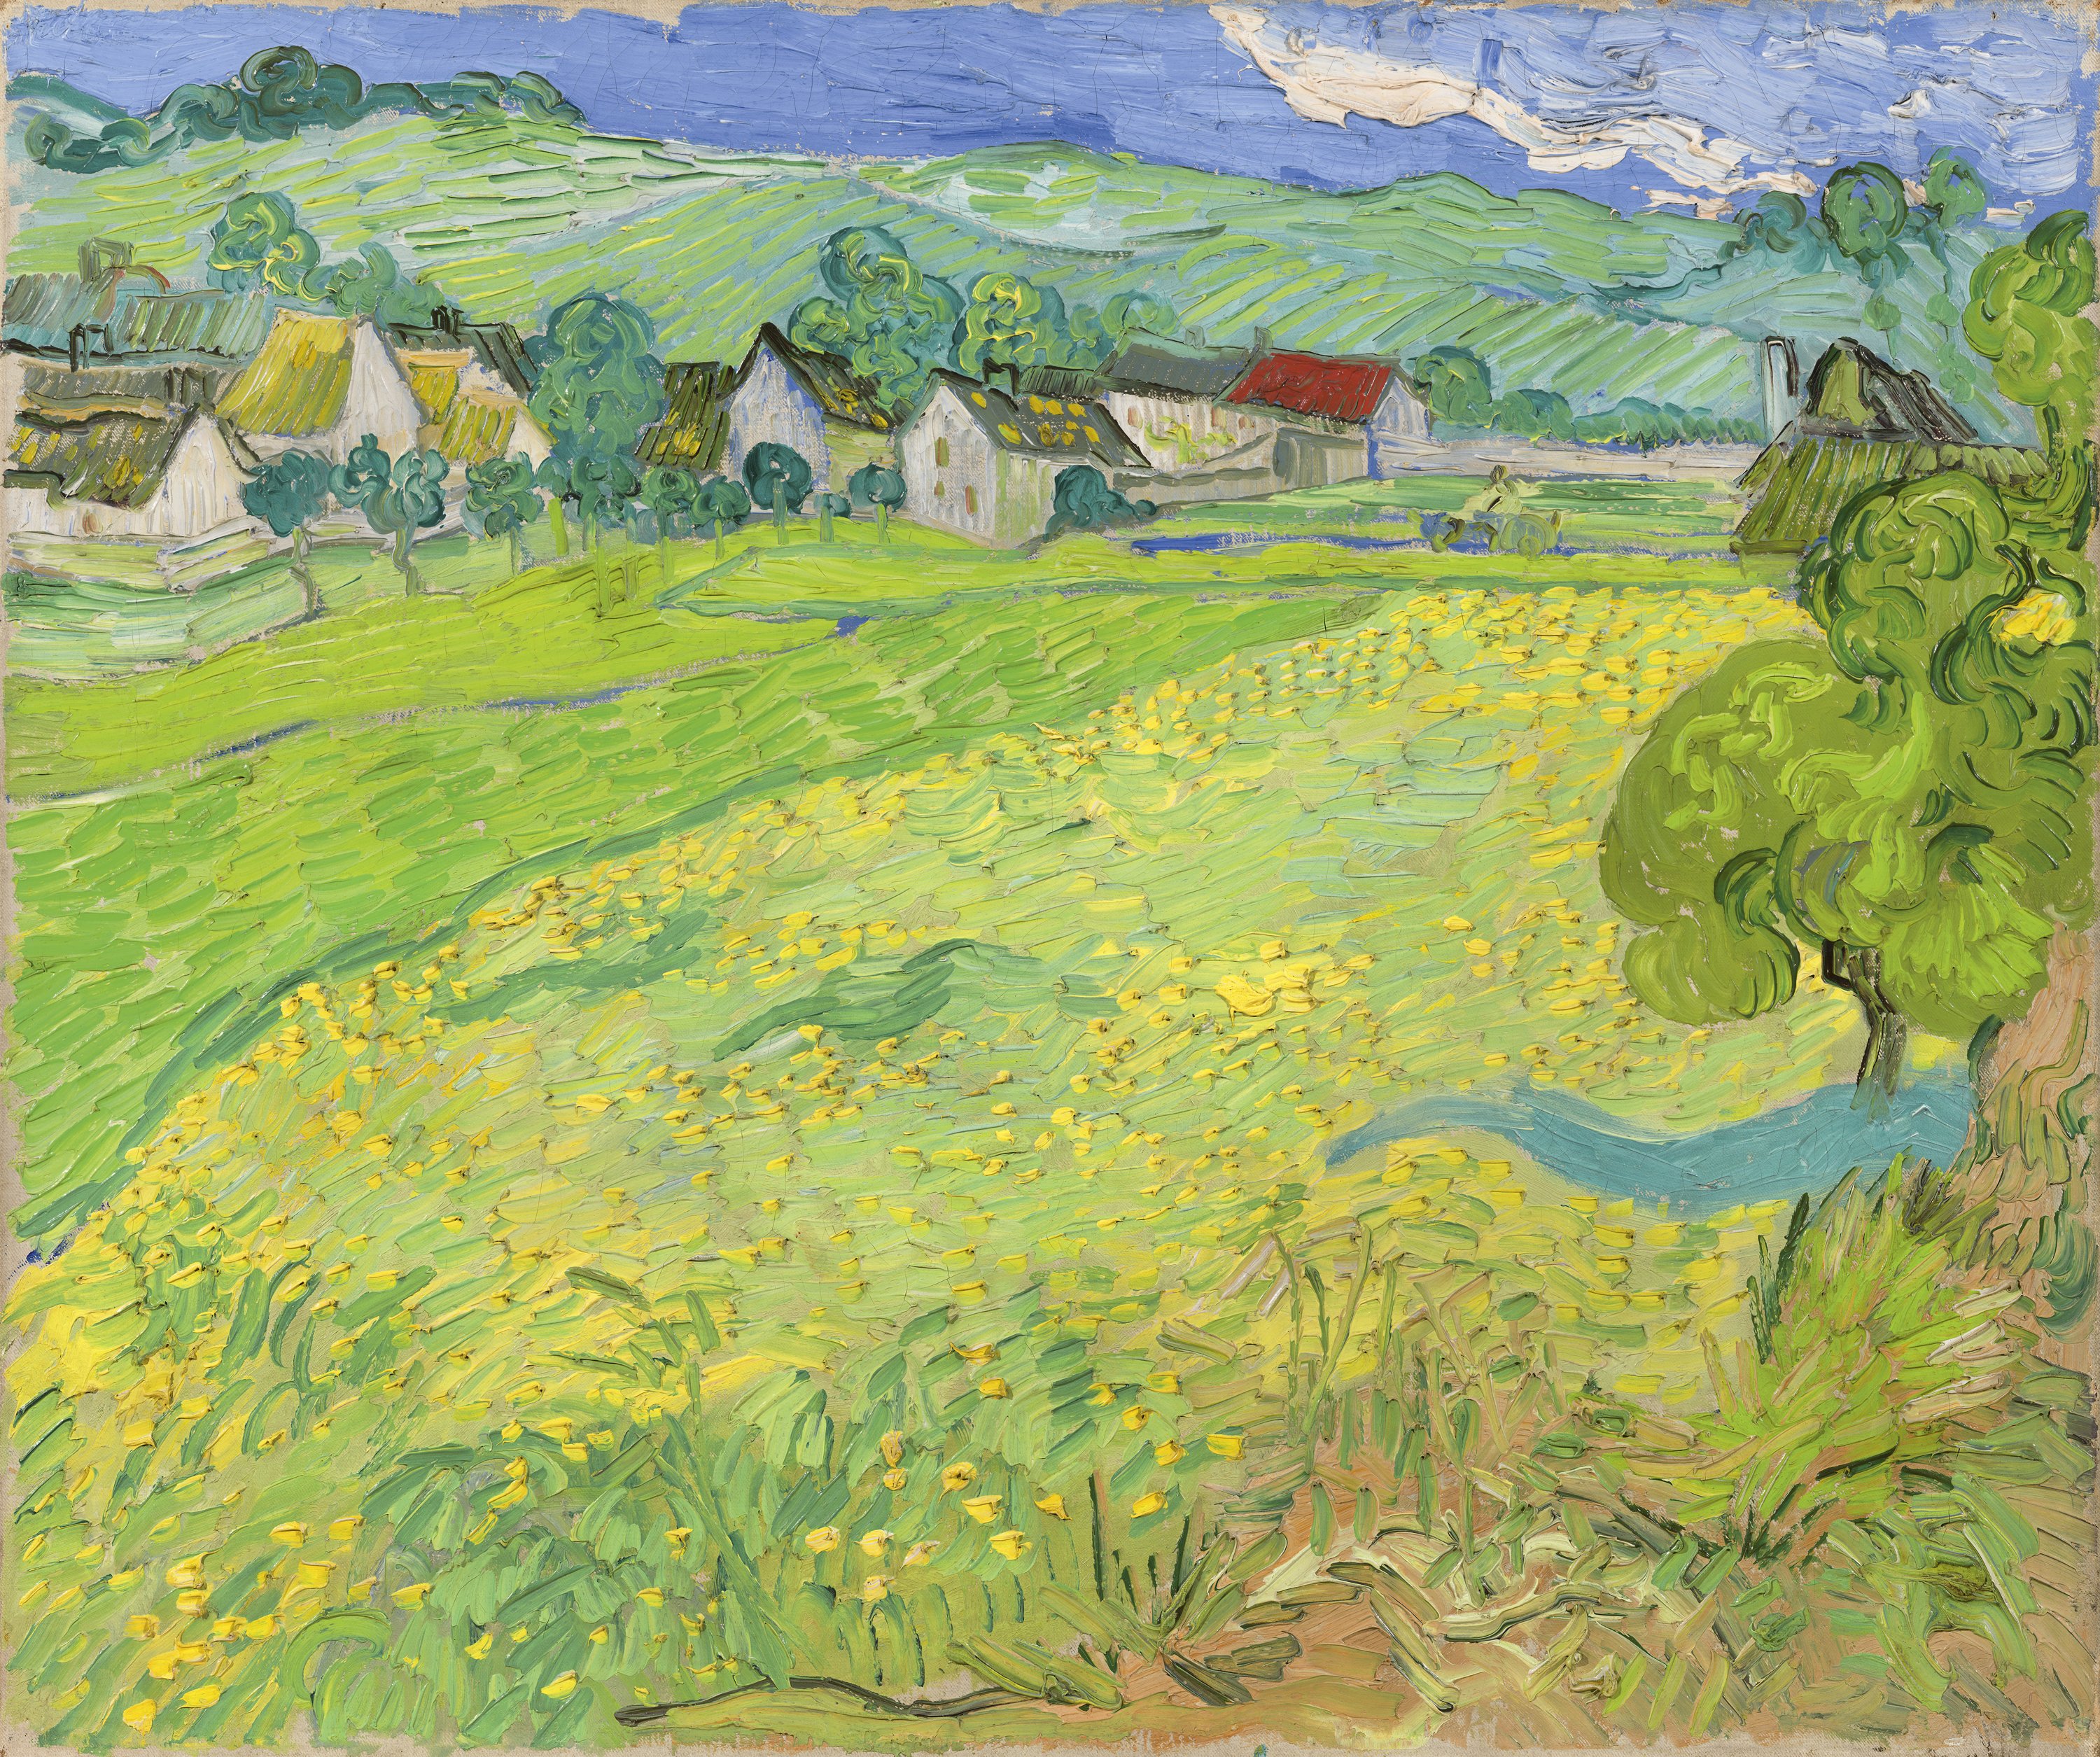 Les Vessenots in Auvers - Gogh, Vincent van. Museo Nacional